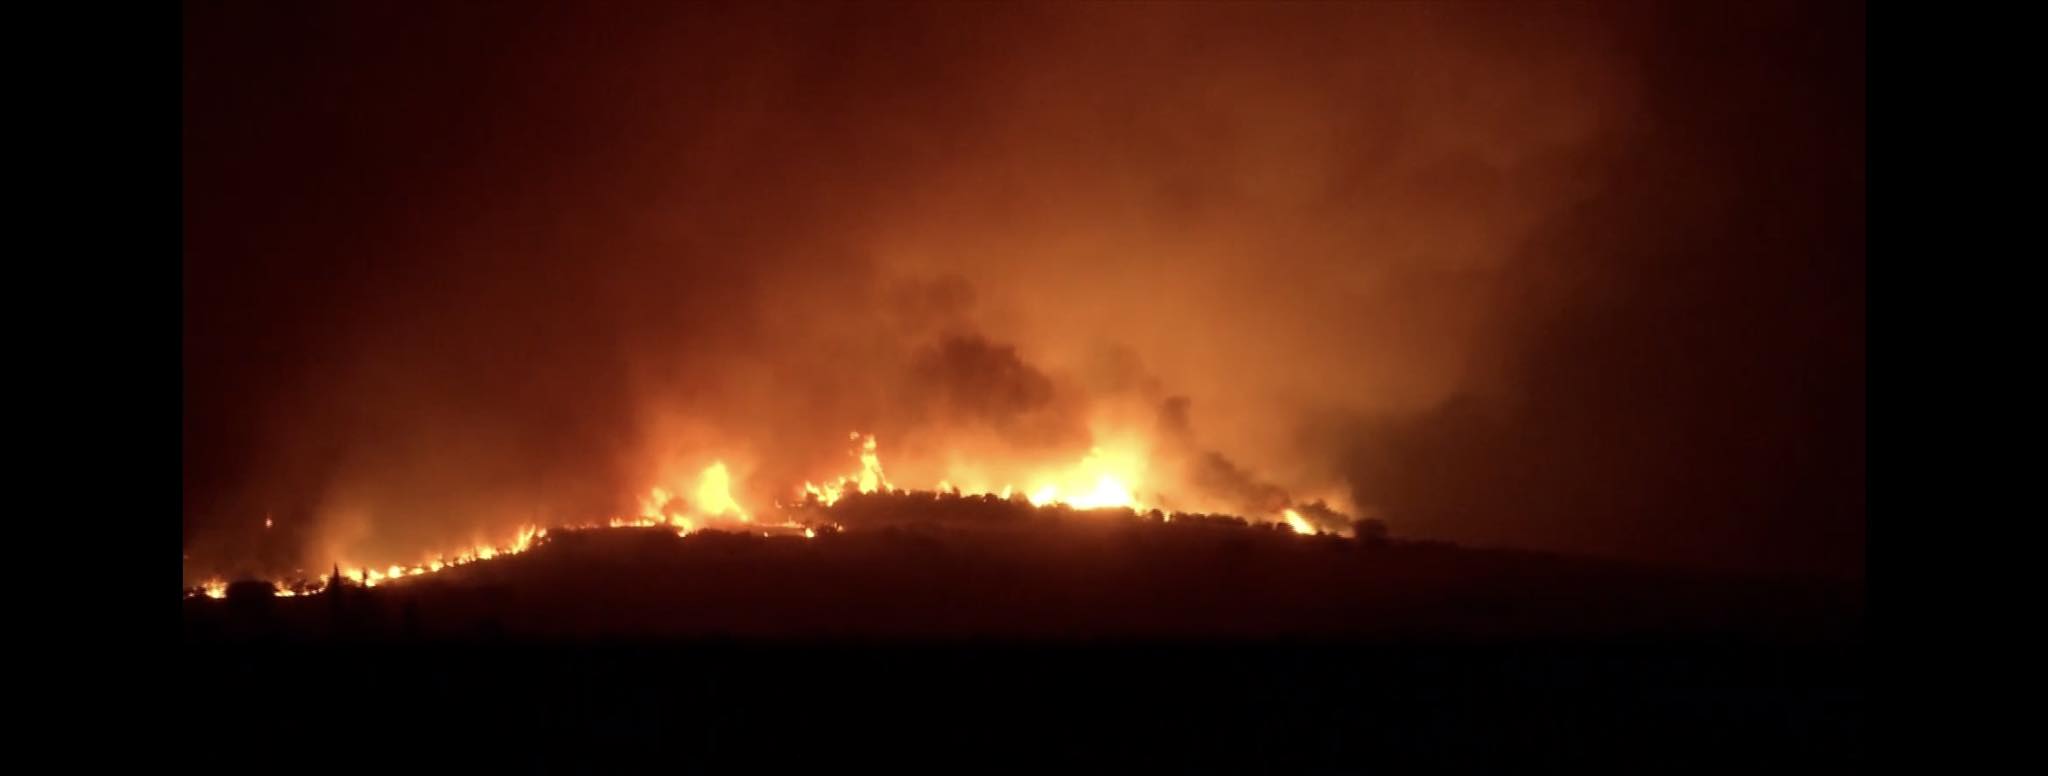 Φωτιά στον Έβρο: Ένας νεκρός στην περιοχή Λευκίμμη – Σε ετοιμότητα για εκκένωση του Νοσοκομείου Αλεξανδρούπολης